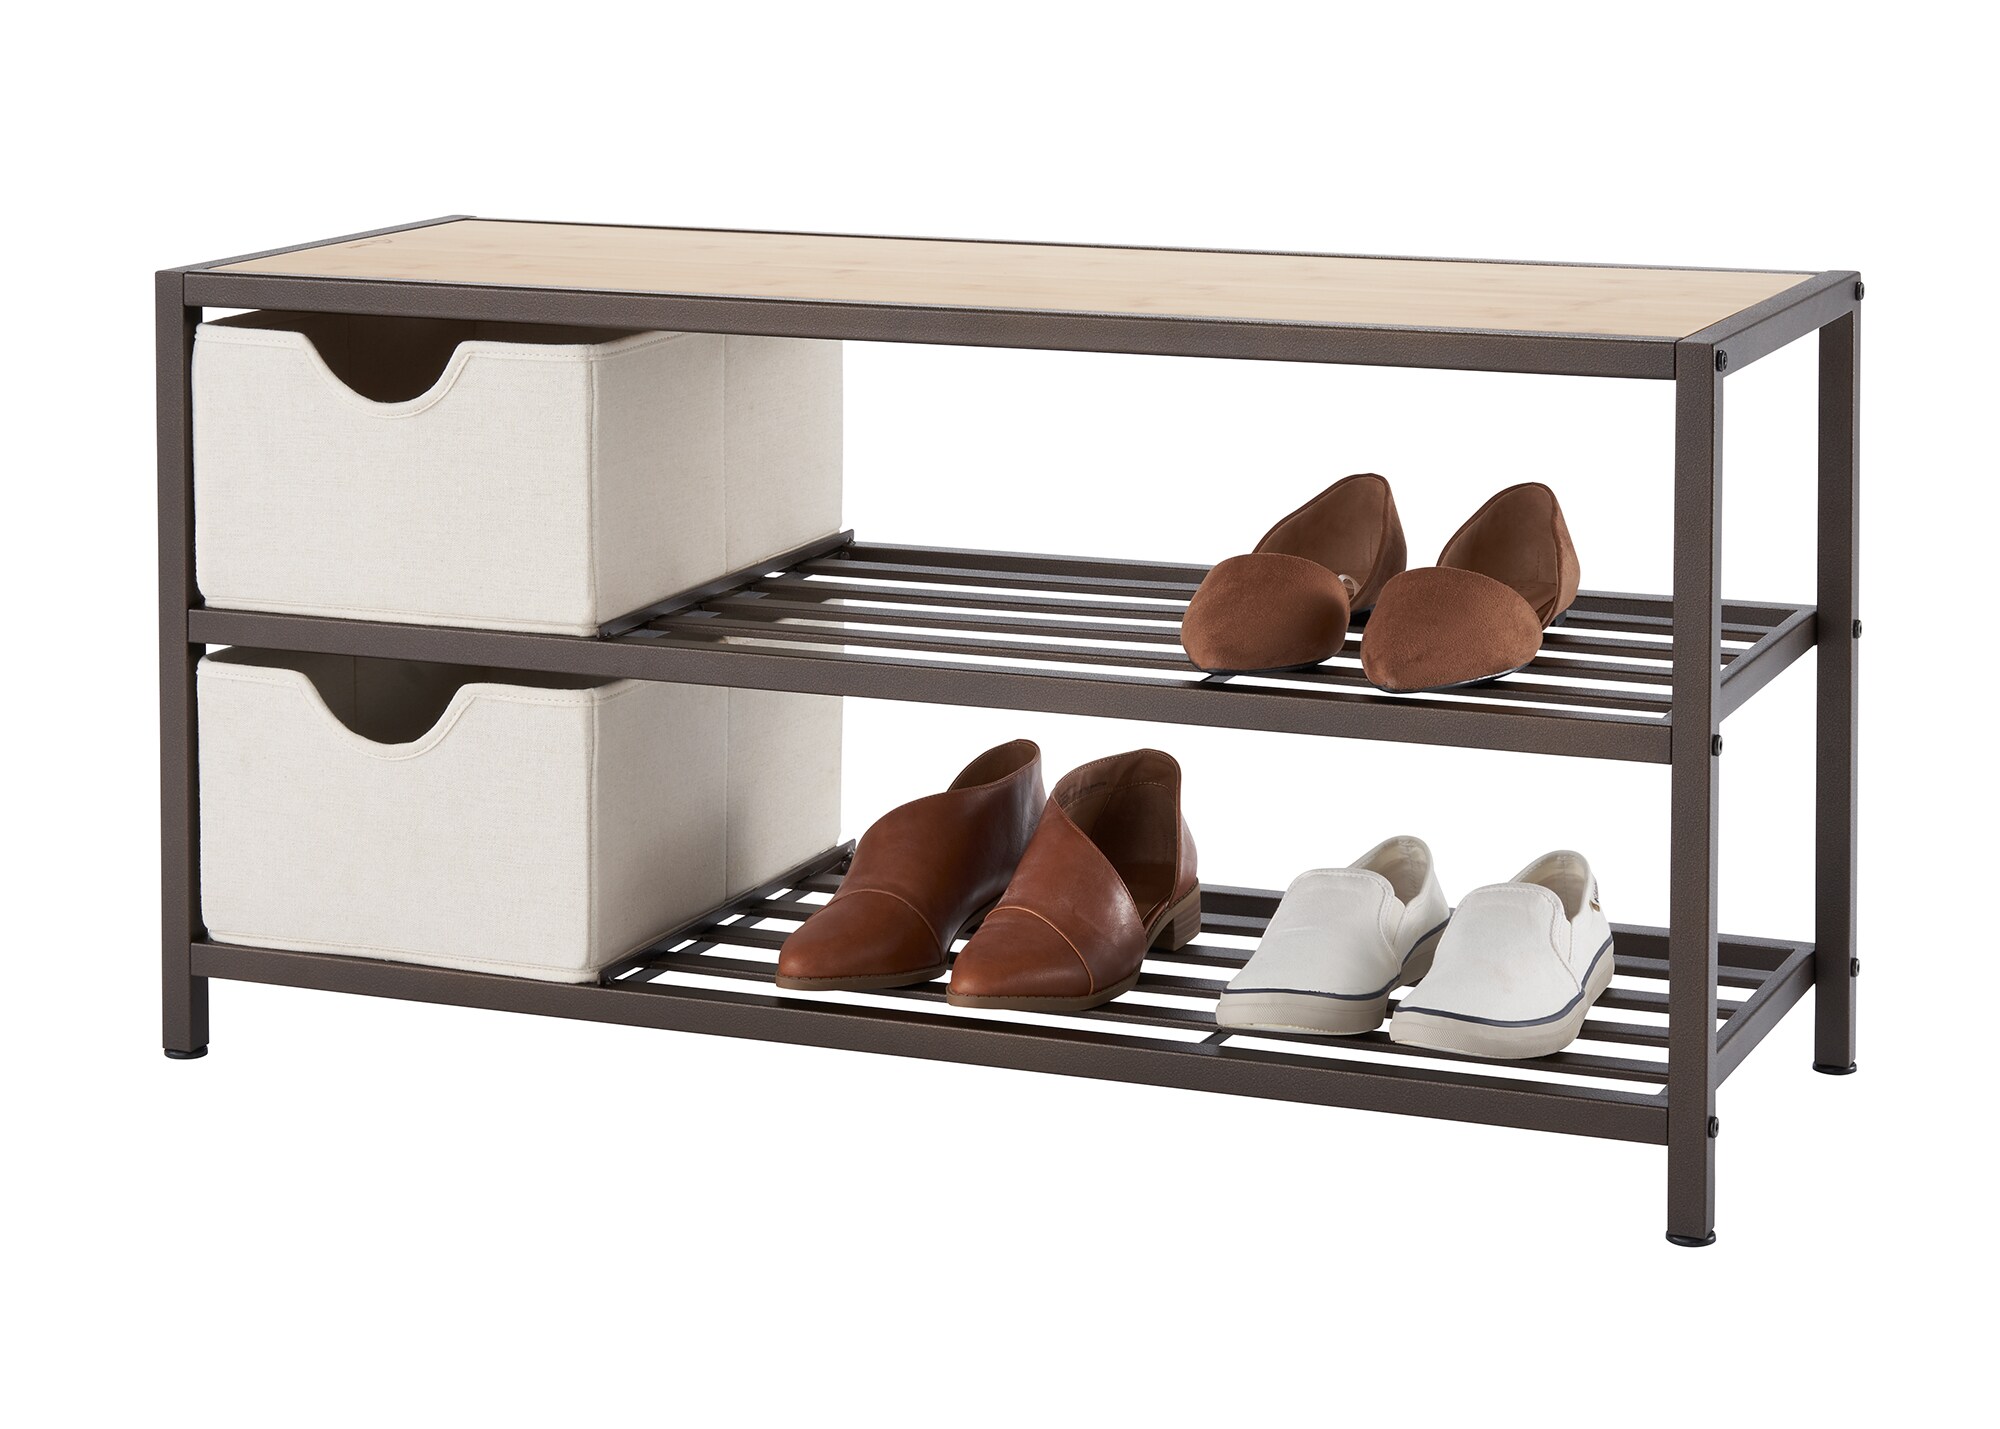 ROJASOP Portable Shoe Rack Organizer 8-Tier Shoe Cabinet 48-Pair Shoe  Organizer Shoe Storage Expandable Free Standing Stackable